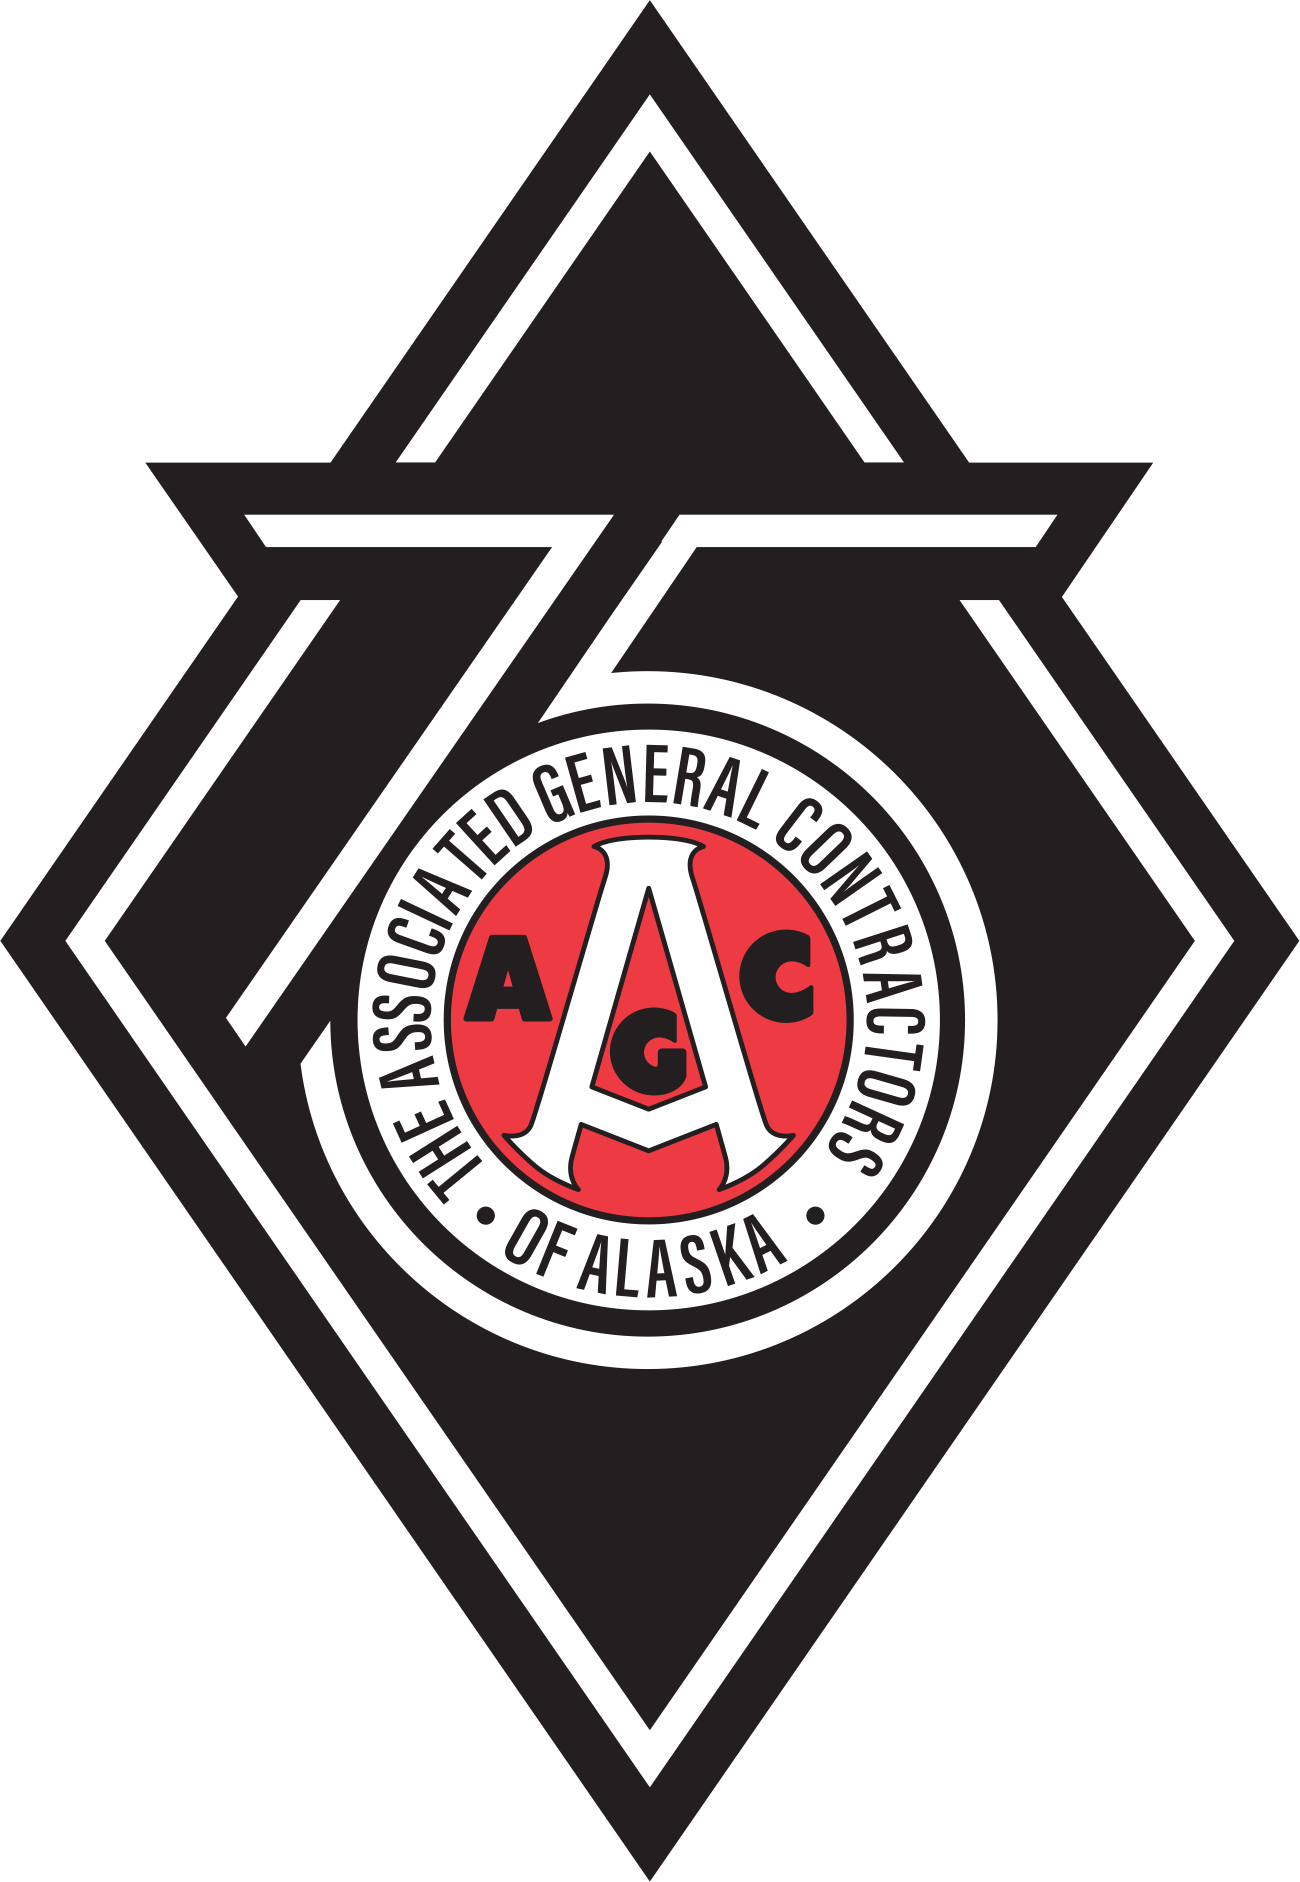 The Associated General Contractors of Alaska 75 logo